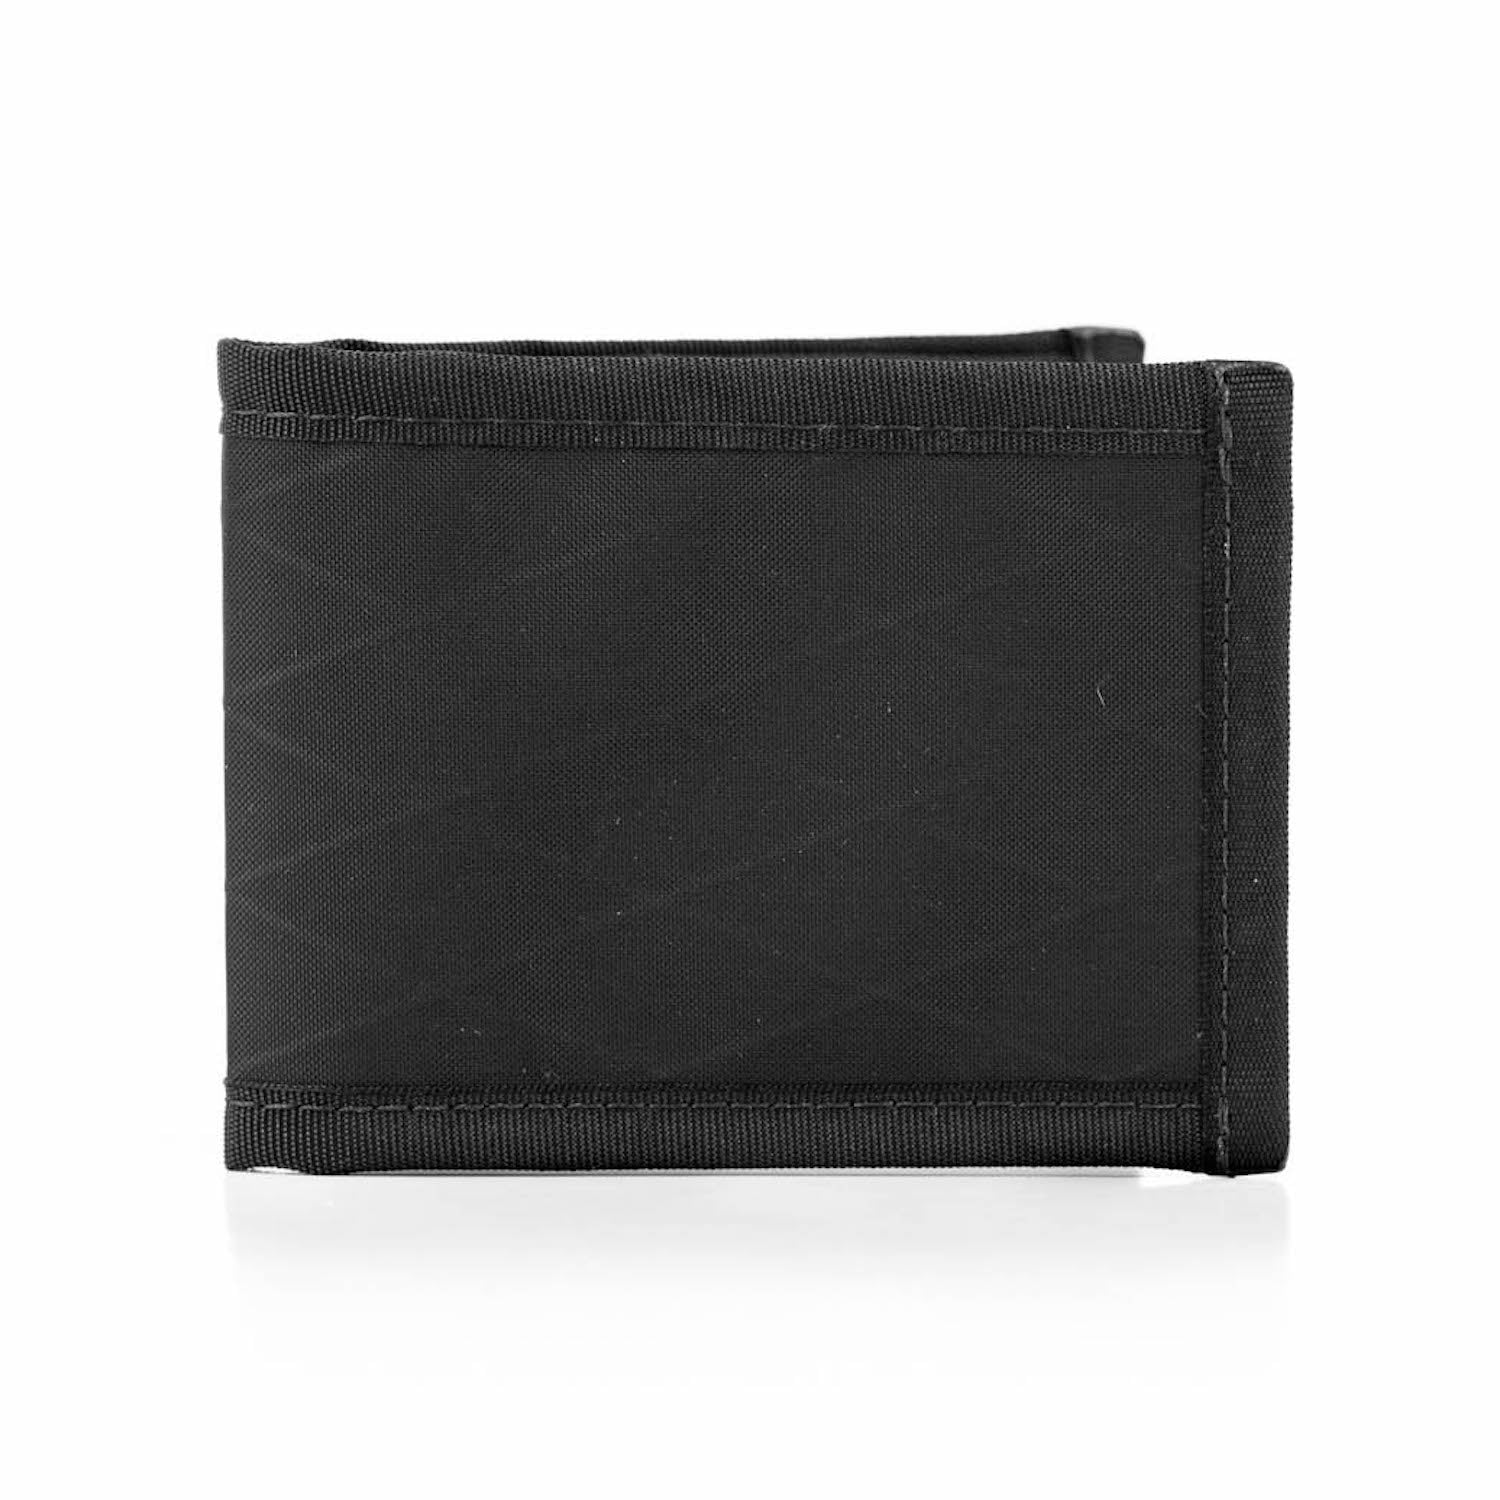 www. - Real Simple Wallet - bagw34*